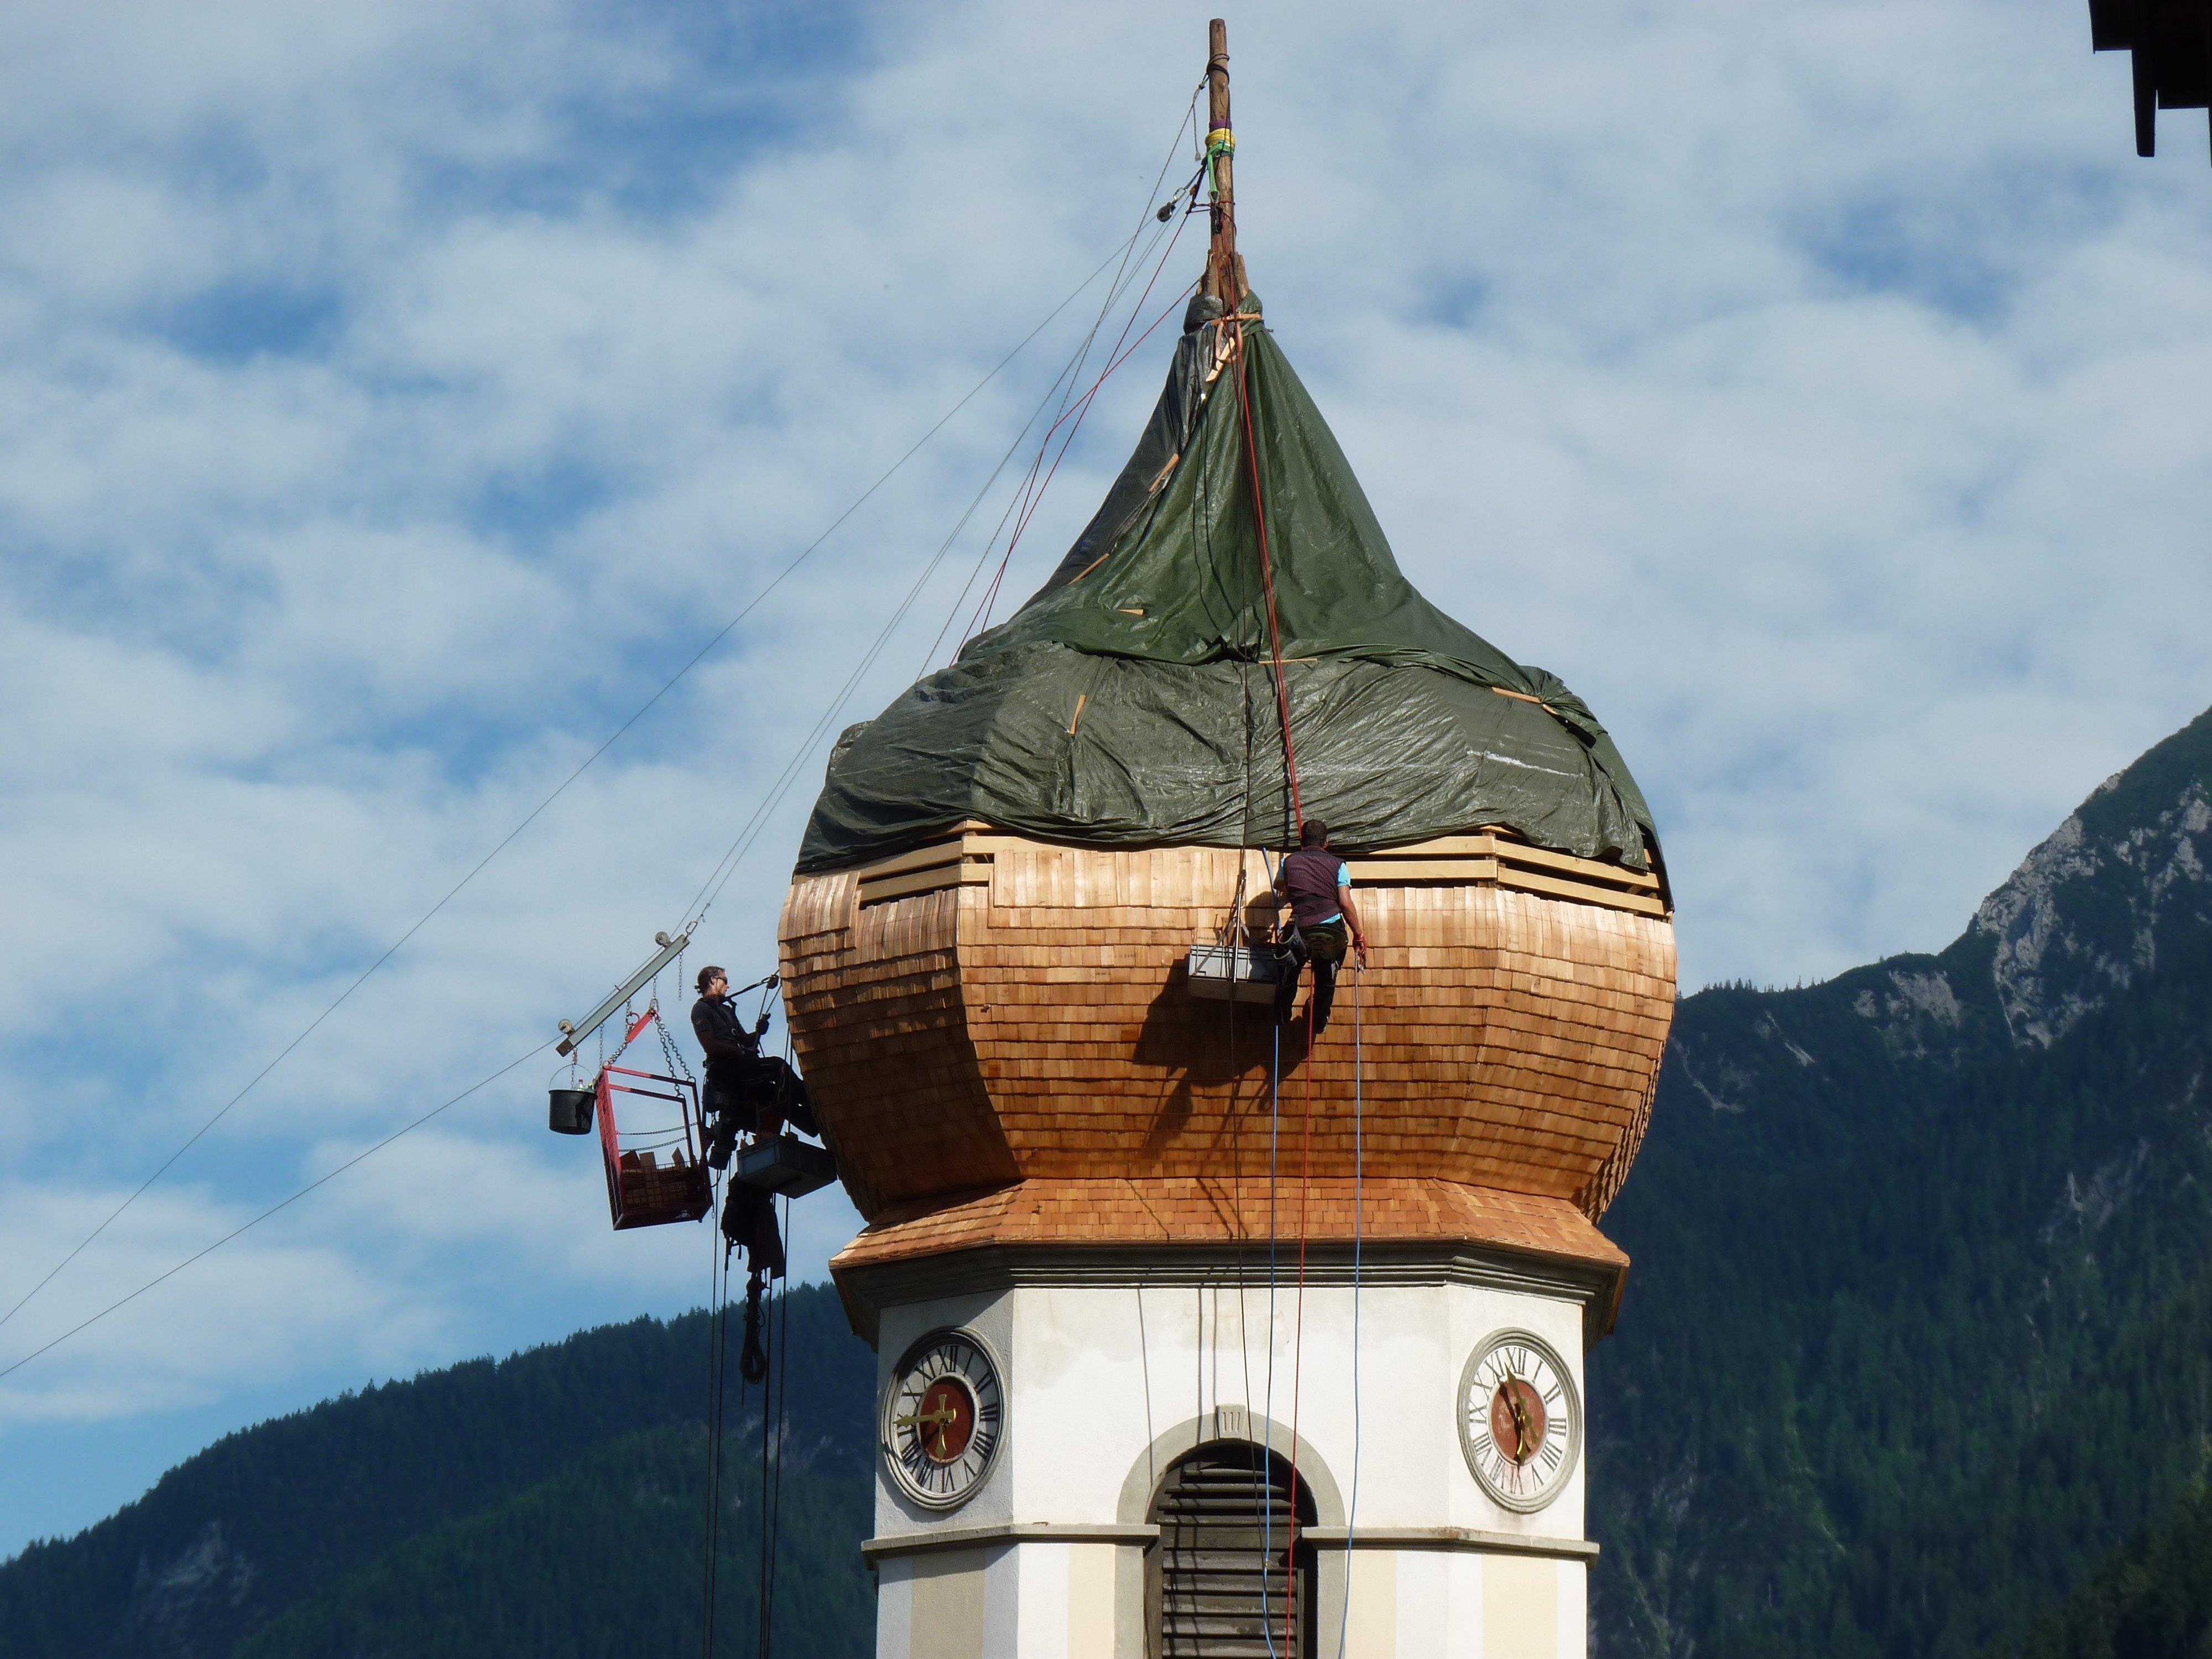 Die Turmdecker aus dem Osttirol sorgten für staunende Blicke bei den Passanten.